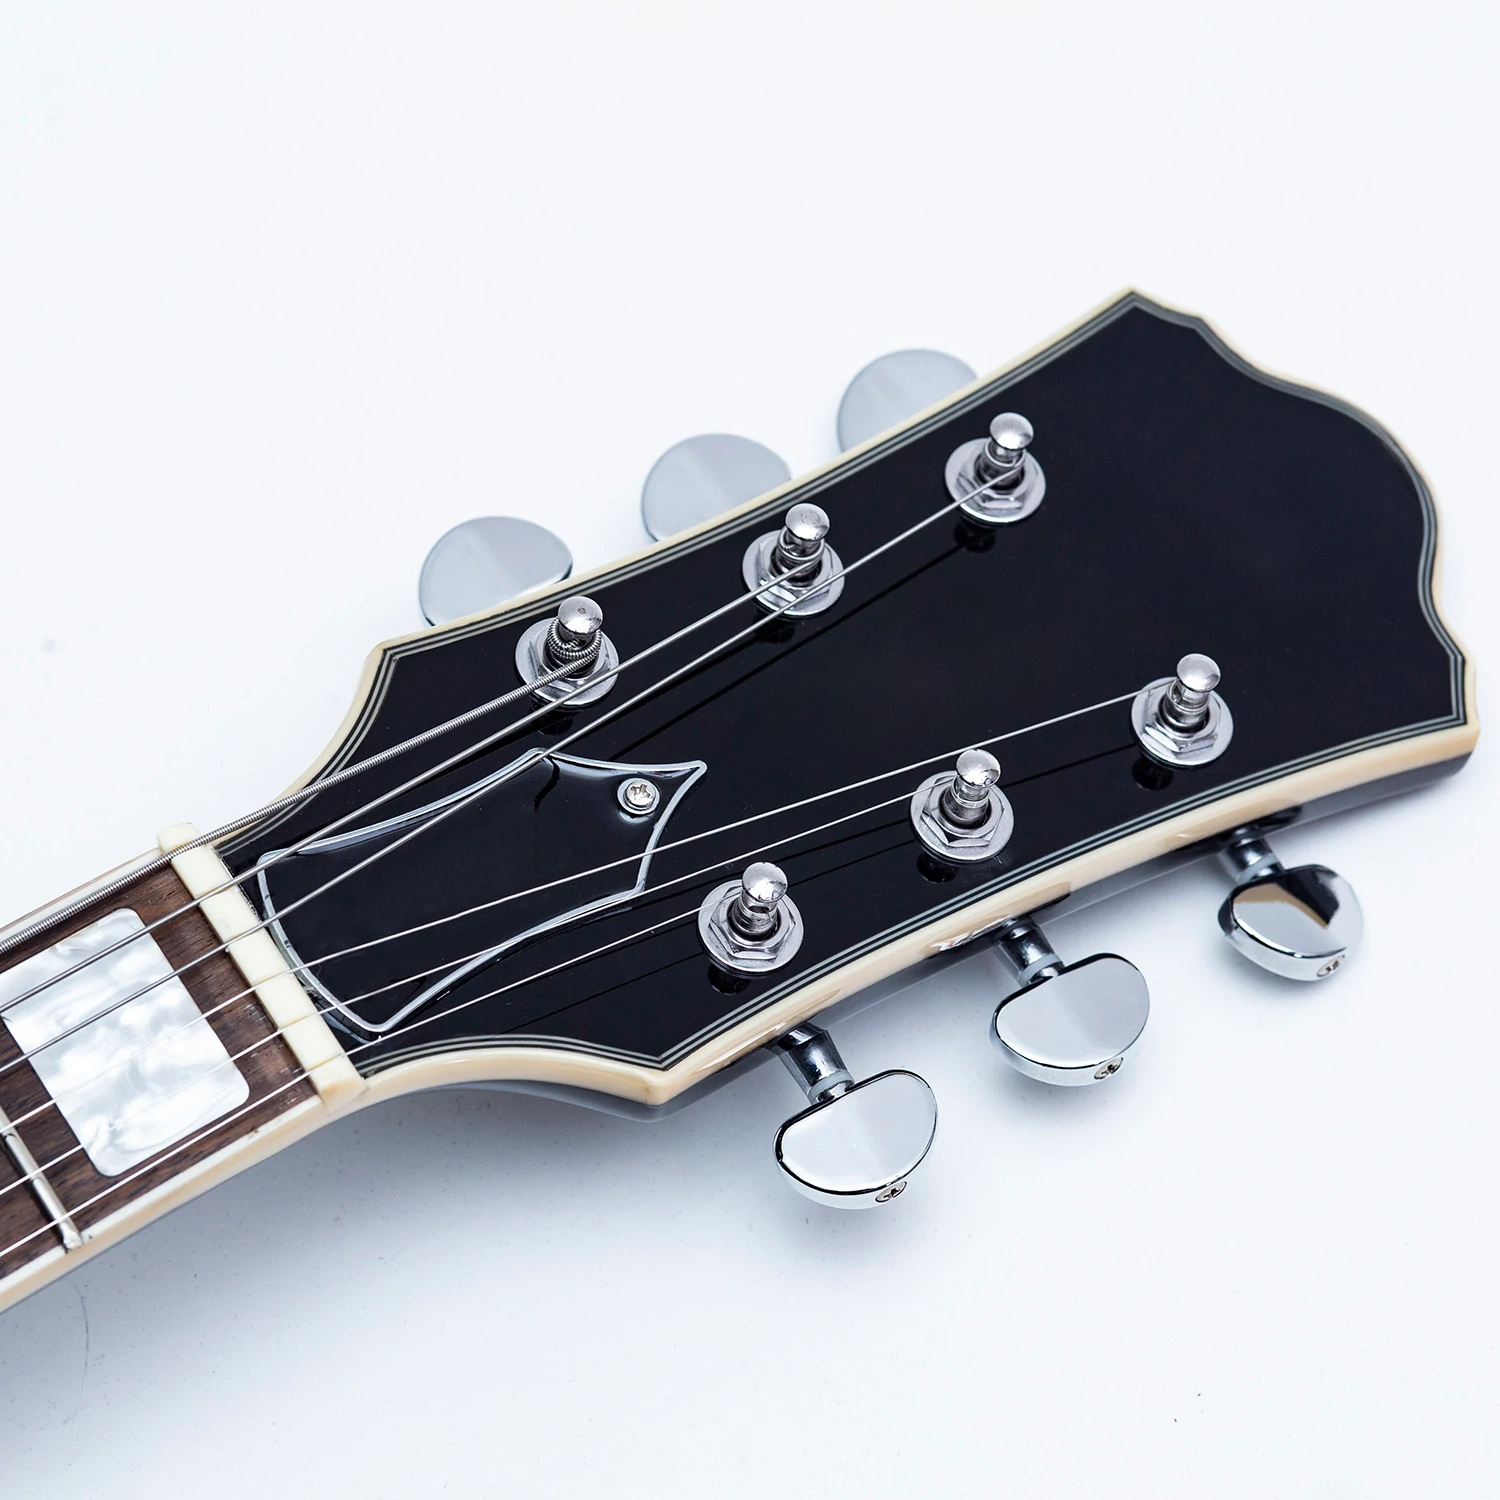 профессиональная электронная гитара OEM с полуакустическим корпусом в джазовом стиле (EGJ351)